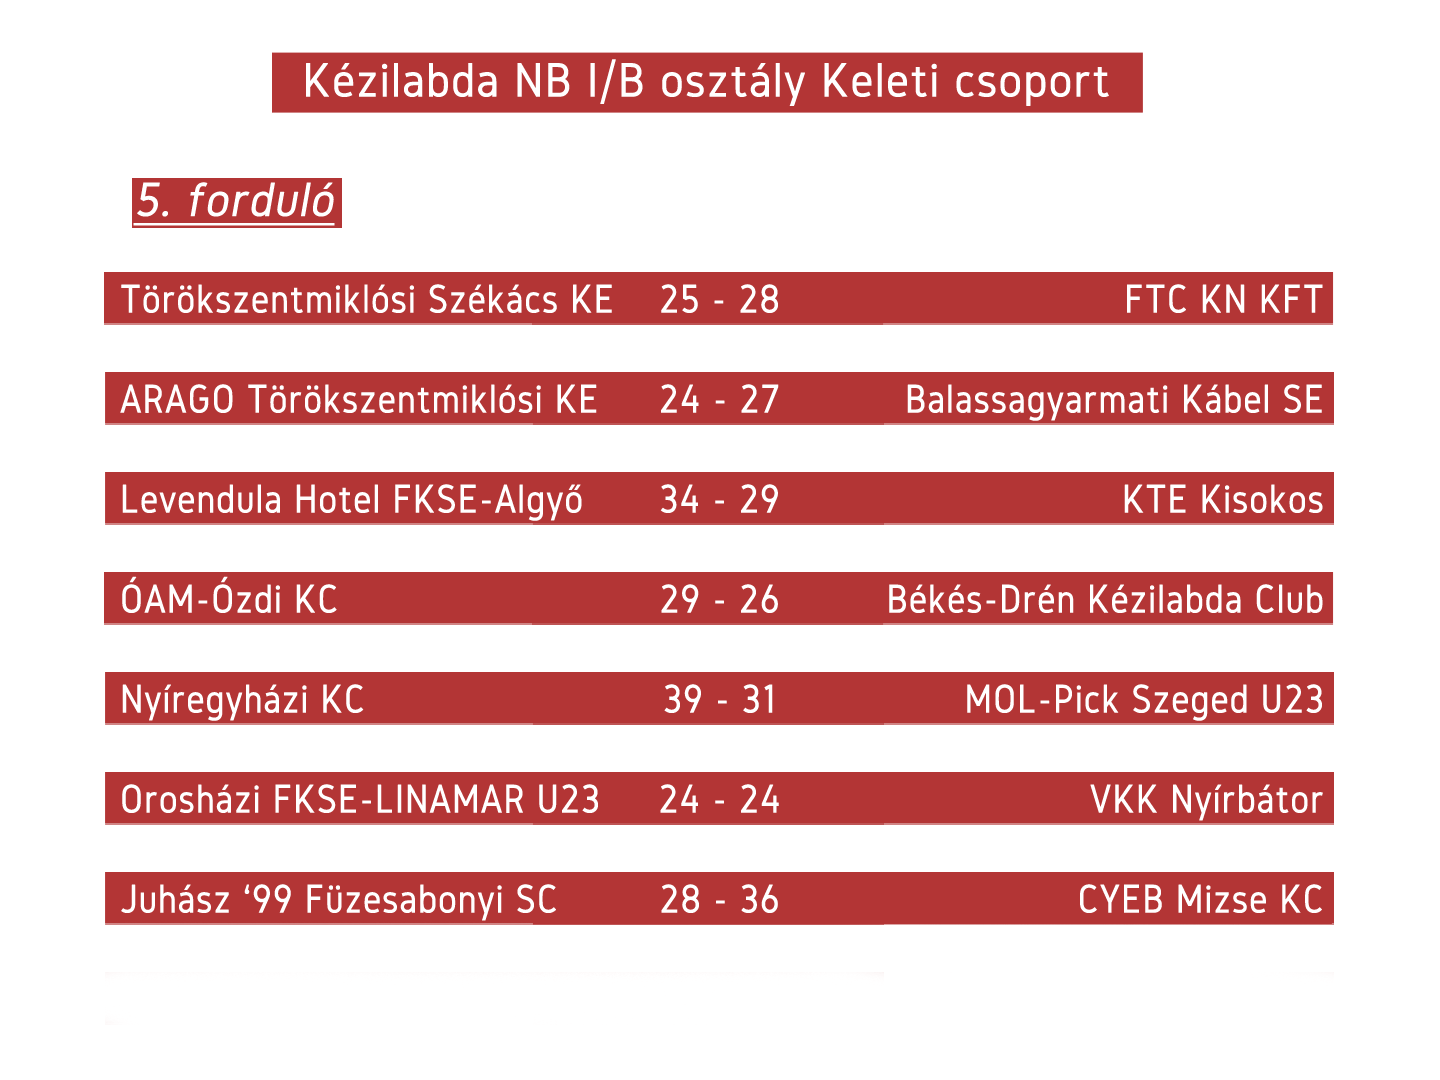 Kézilabda NB1/b 5. forduló – Székács KE